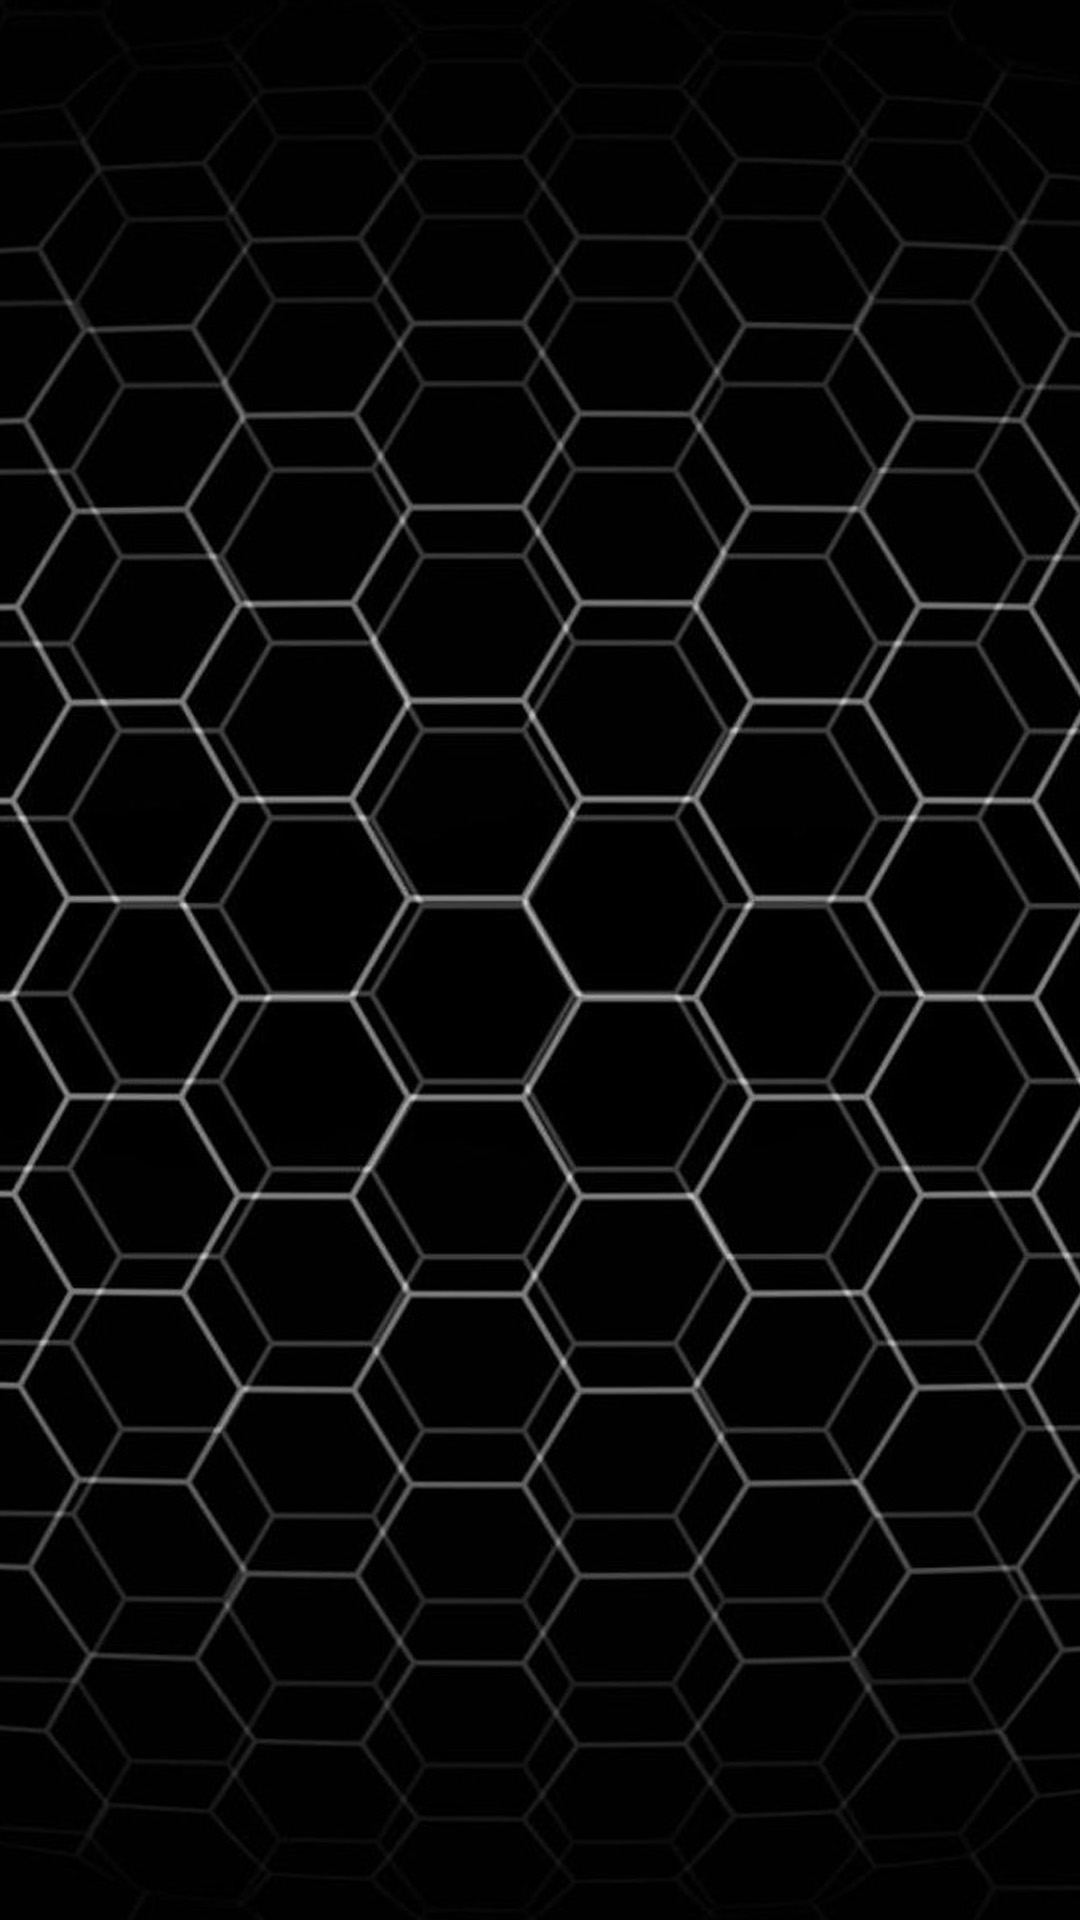 Abstract Hexagon